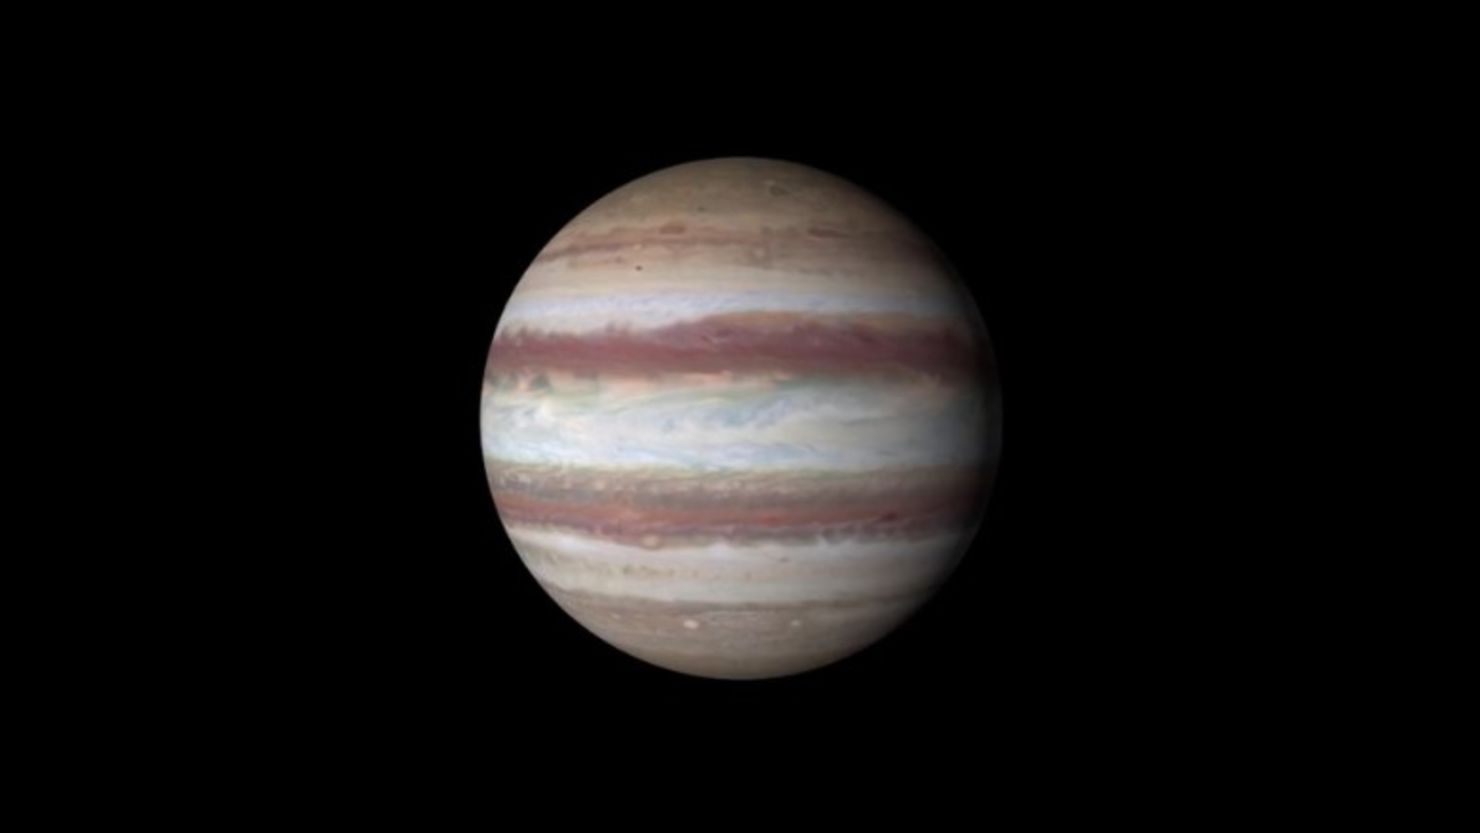 Júpiter se sitúa en el borde del cinturón de asteroides y es tan grande que su gravedad puede afectar a otros objetos.